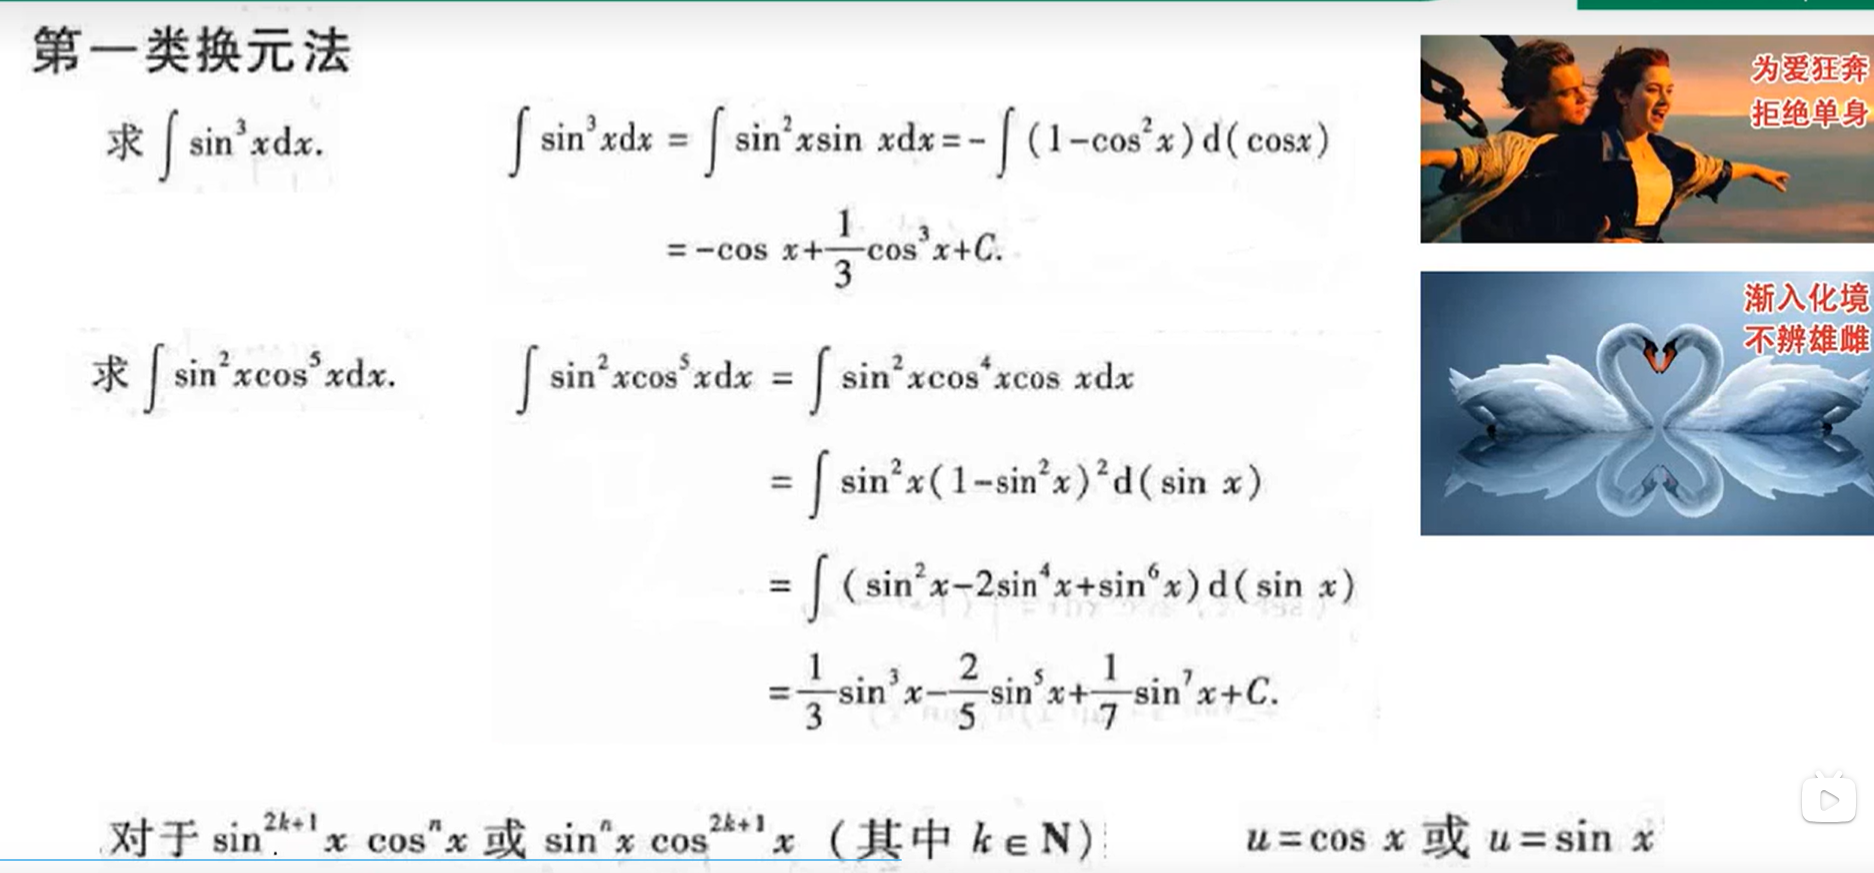 第三章 一元函数积分学， 第一节不定积分积分方法，第一类还原法